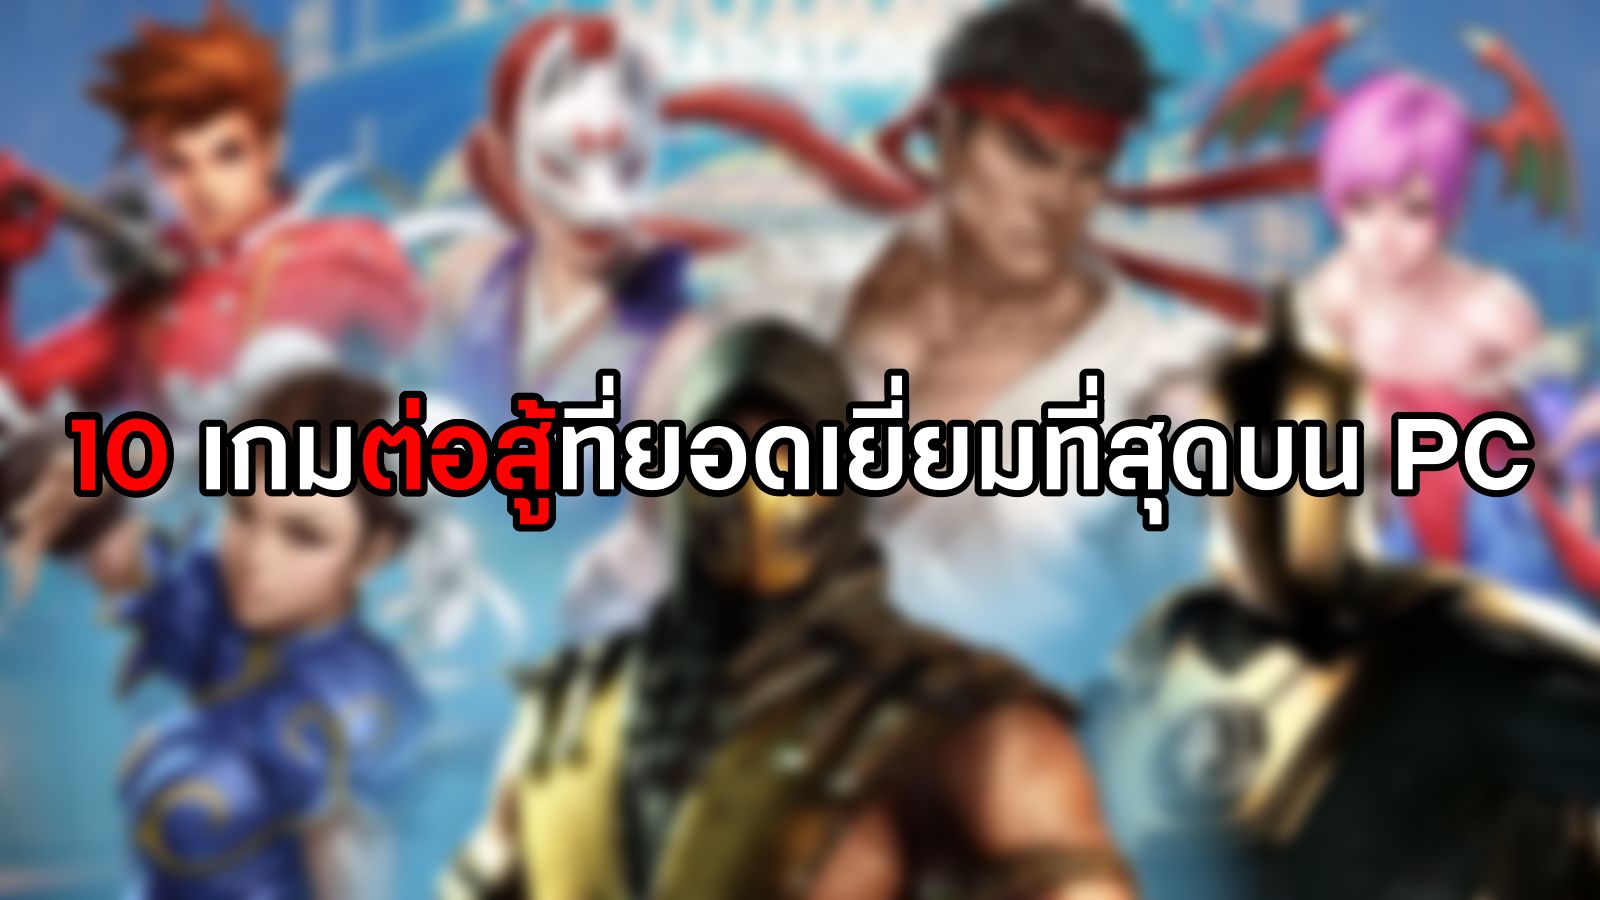 “แอนโทเนีย” ฟีเวอร์มาก! กลับไทย 4 วัน ค่าตัวพุ่ง โกยเงิน 21 ล้านบาท